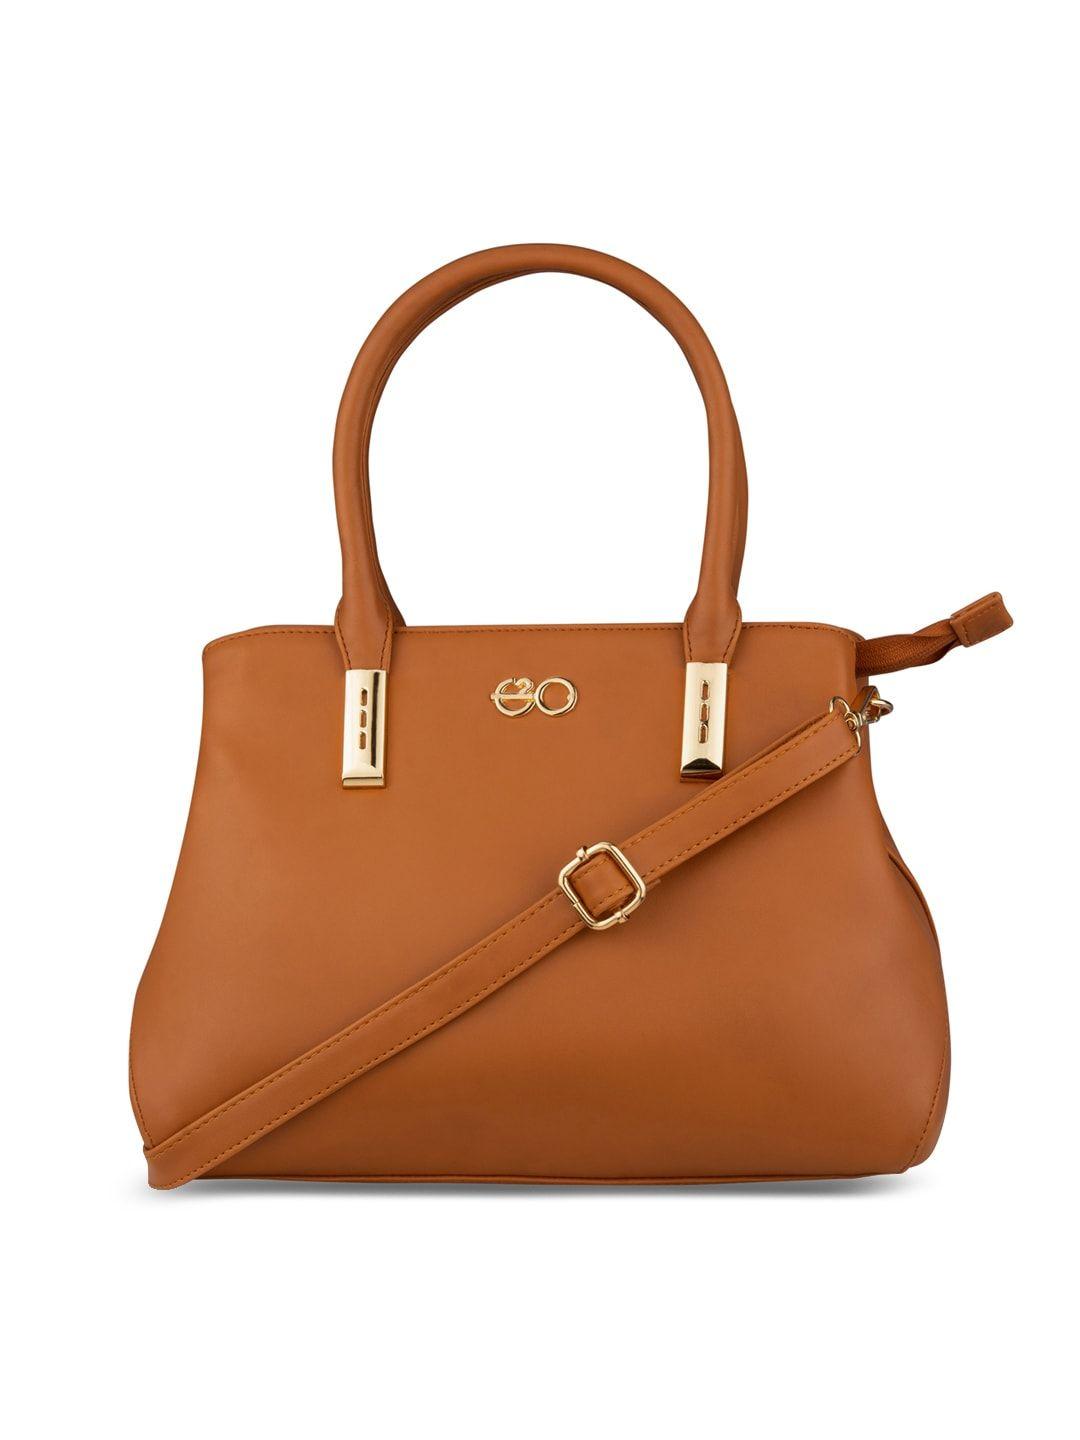 e2o tan brown solid handheld bag